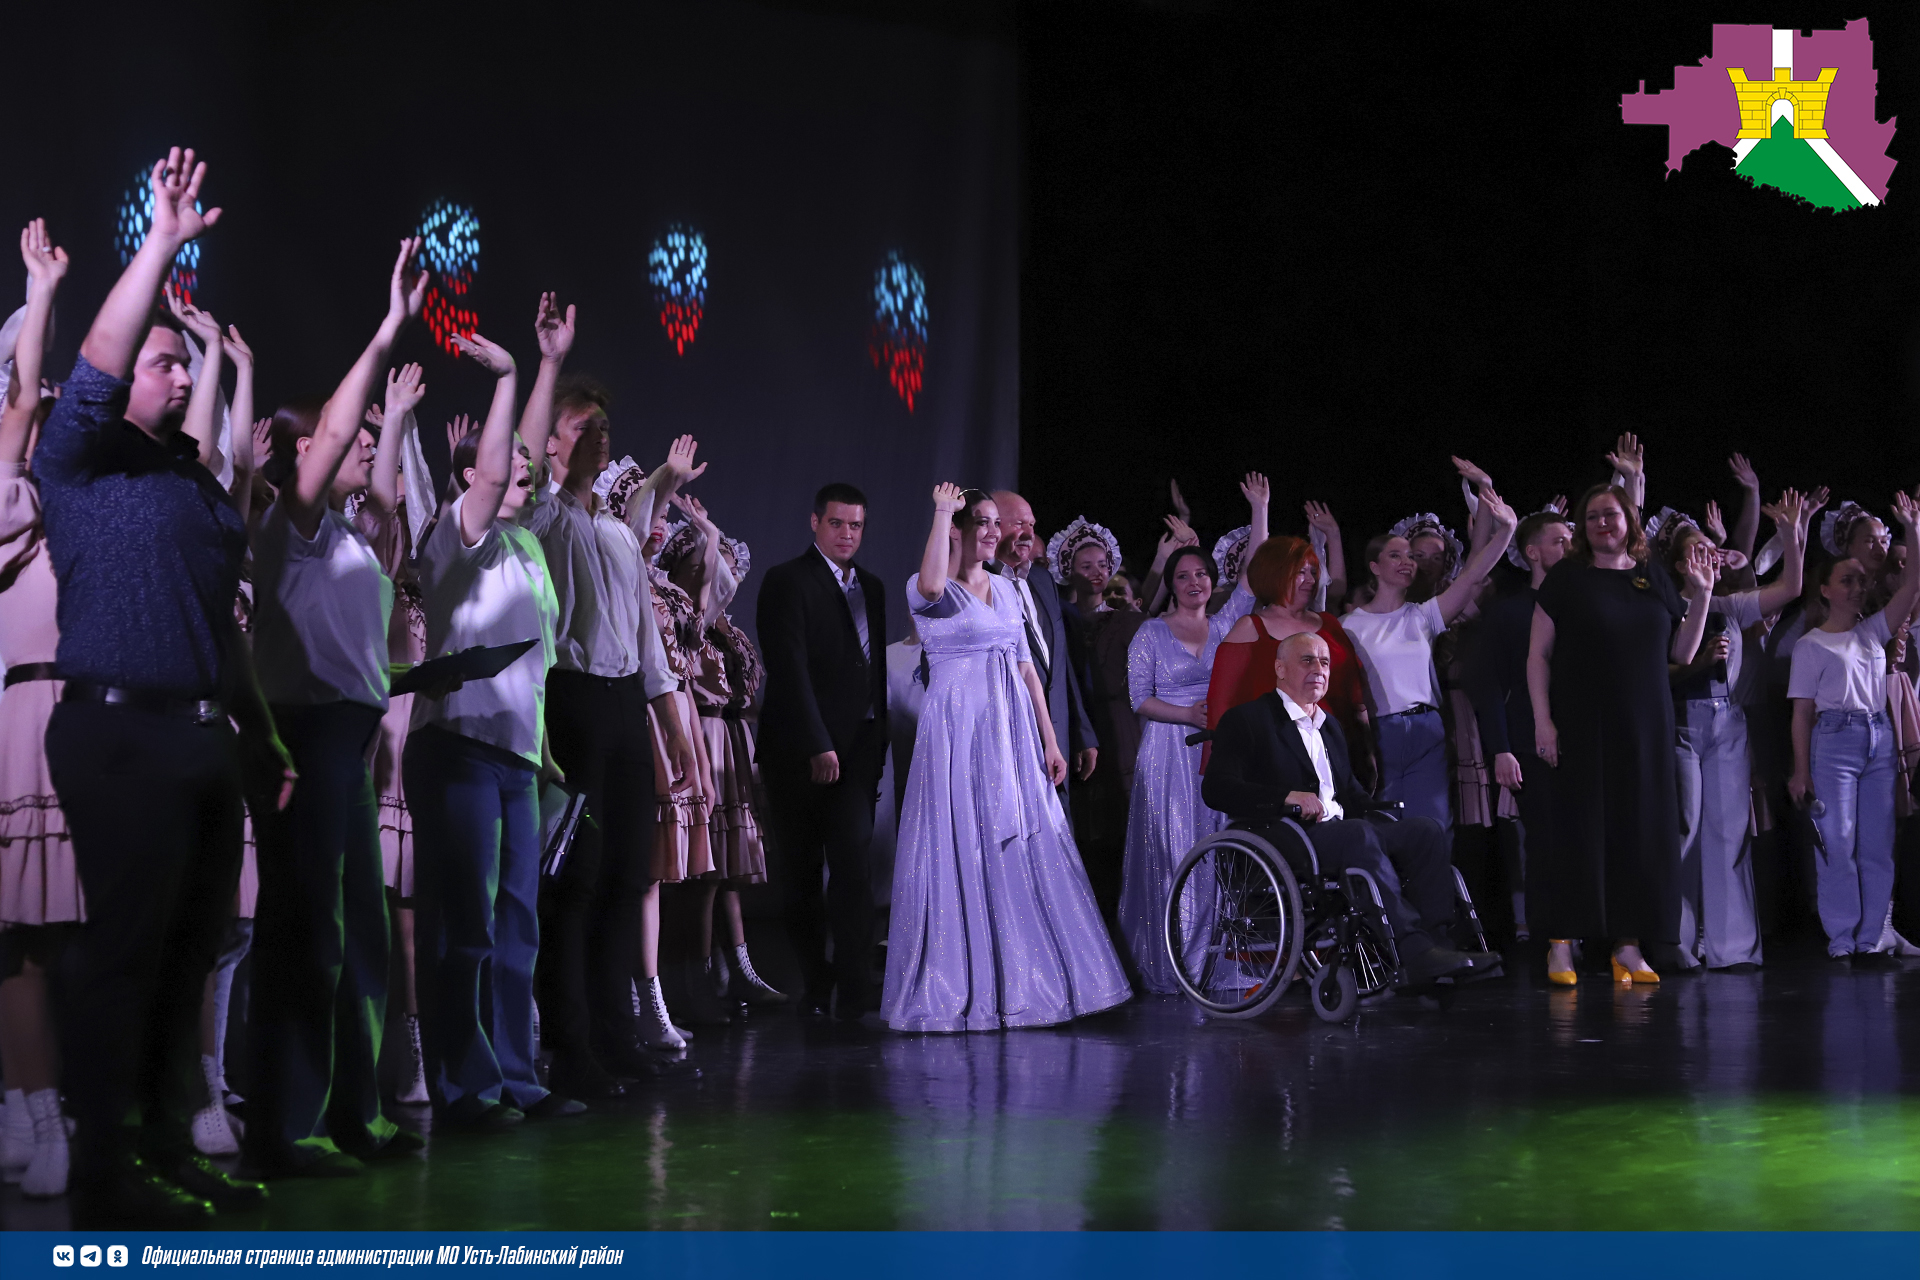 Сегодня в районном Дворце культуры "Кубань" состоялось театрализованное представление "Люди - сердце и душа района", посвященное 100-летию Усть-Лабинского района